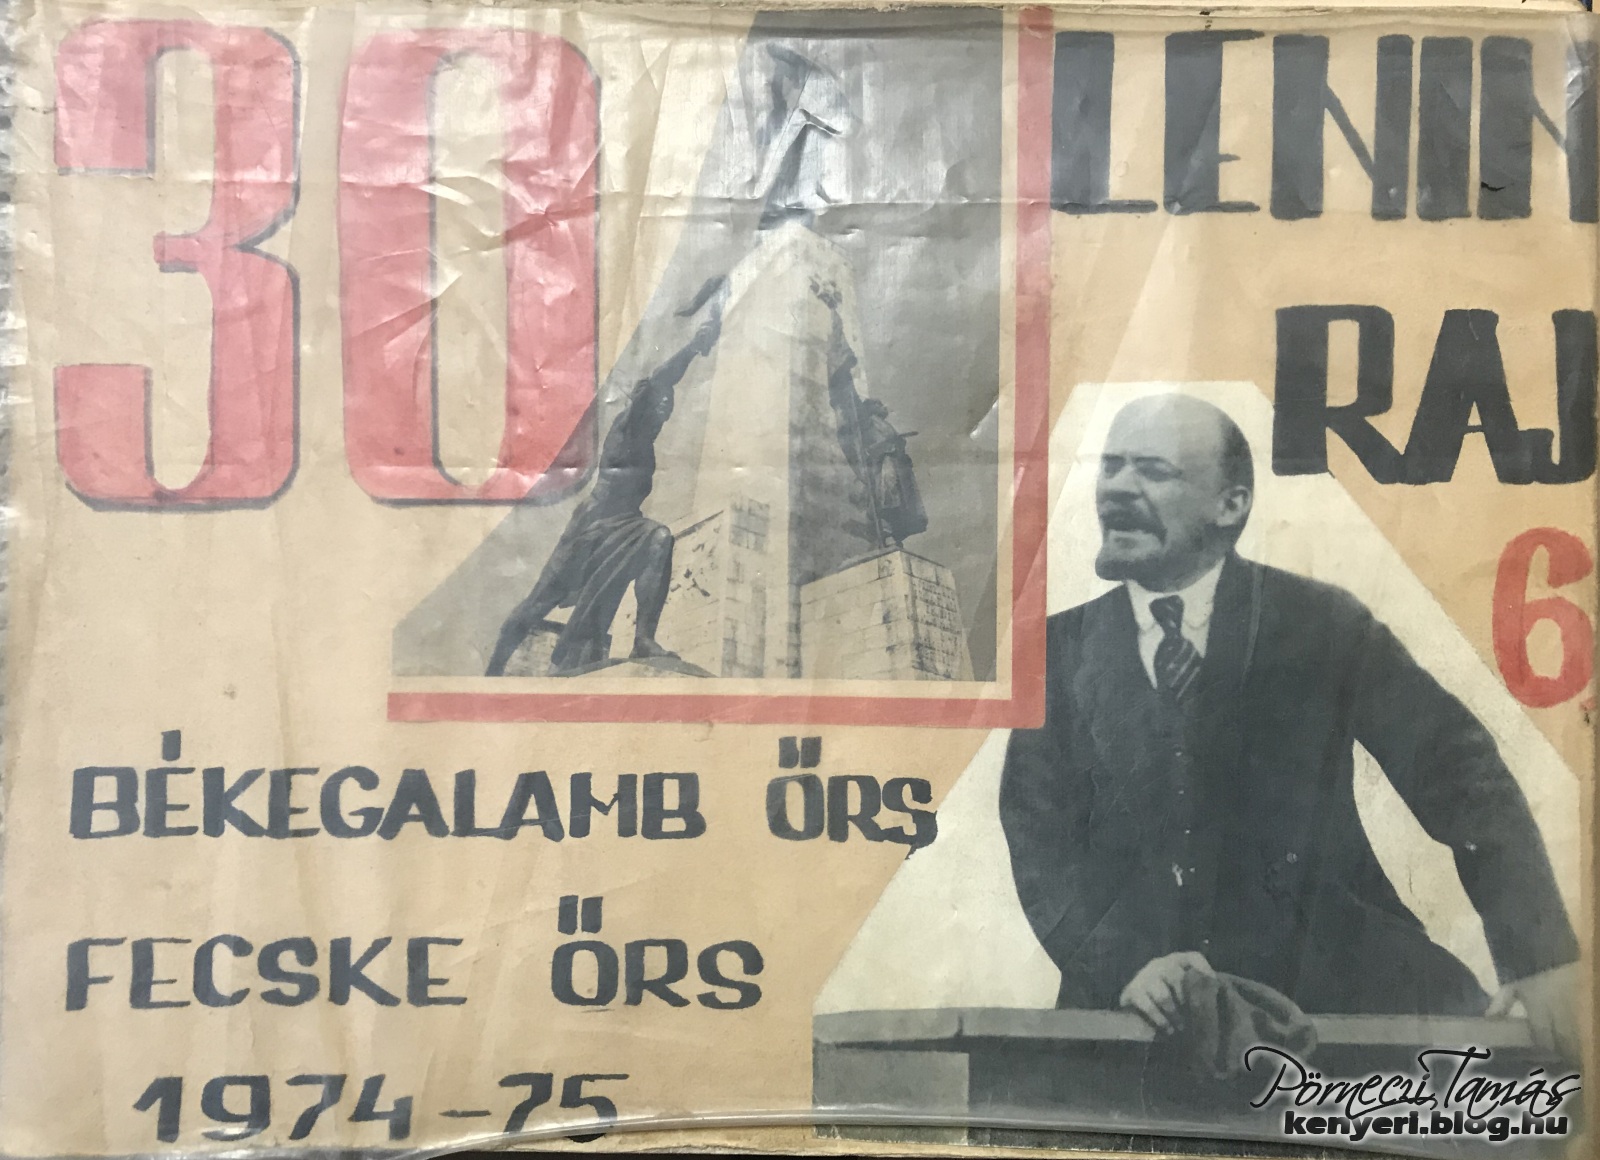 A 6. osztályos Lenin raj, két őrsének (Békegalamb és Fecske őrs) közös naplója az 1974/75 tanévből 